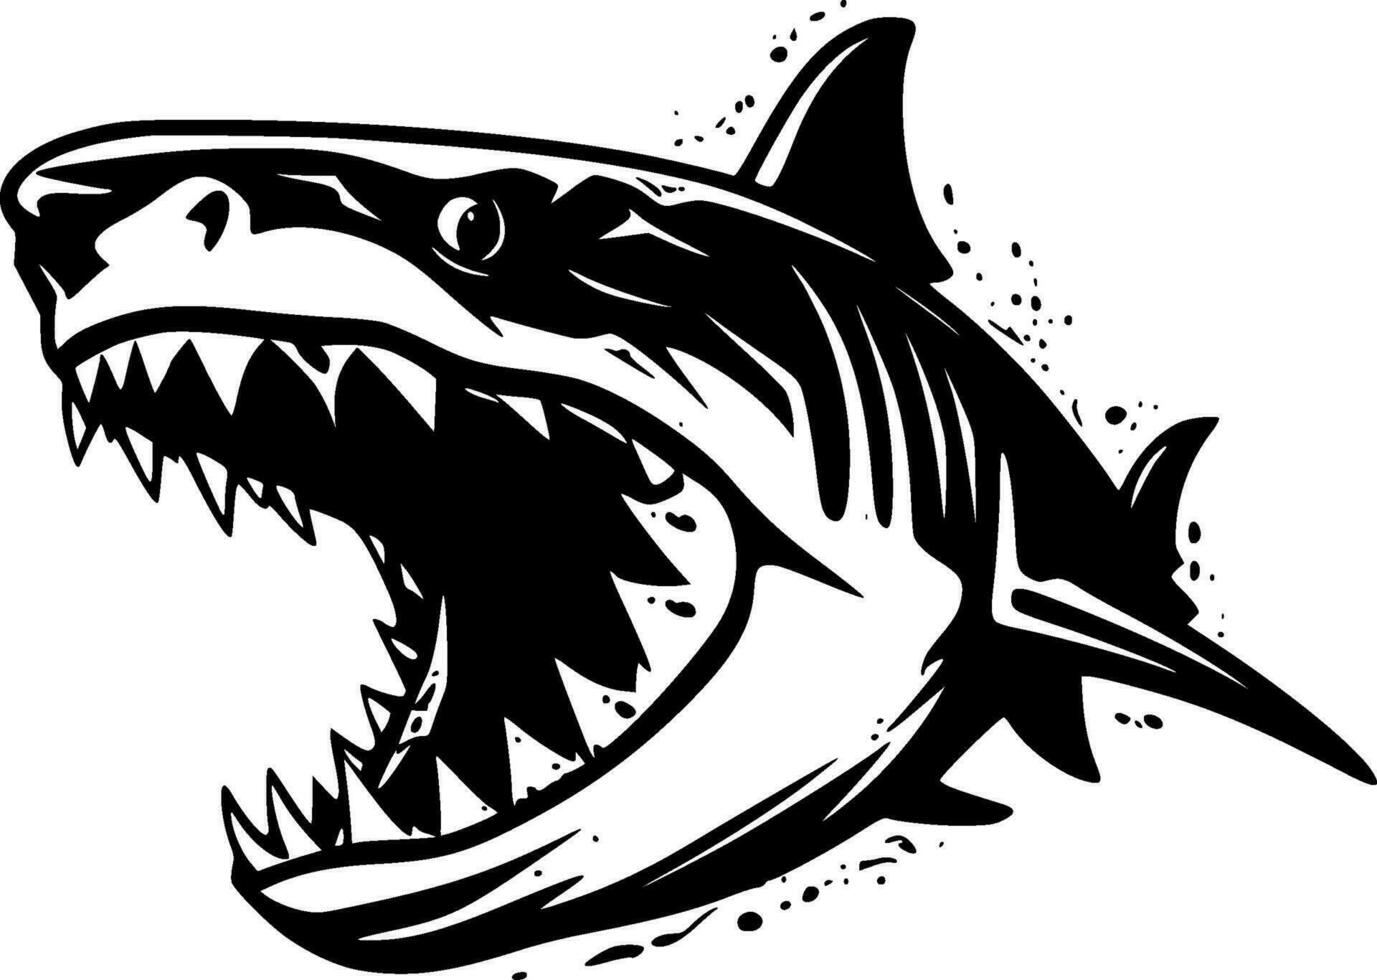 haai - hoog kwaliteit vector logo - vector illustratie ideaal voor t-shirt grafisch